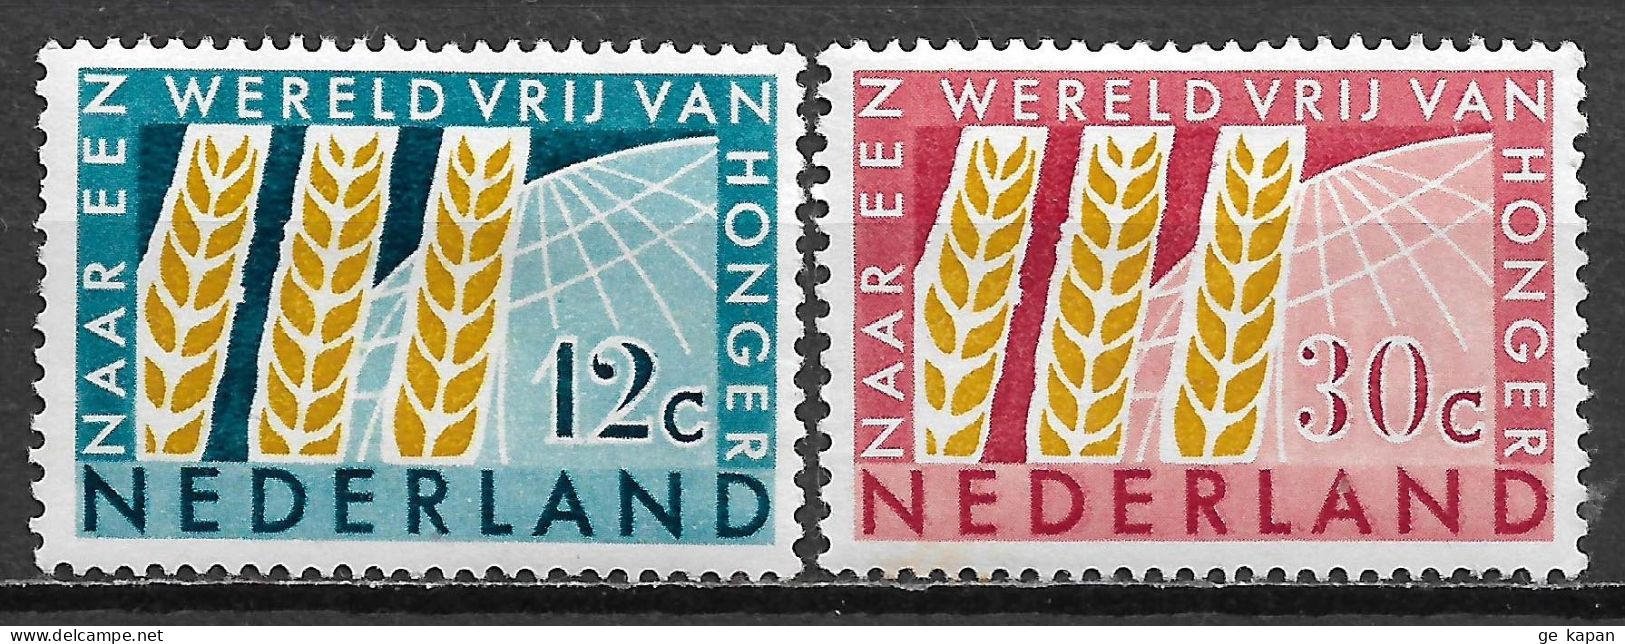 1963 NETHERLANDS Complete Set Of 2 MVLH STAMPS (Michel # 791,792) CV €1.50 - Unused Stamps